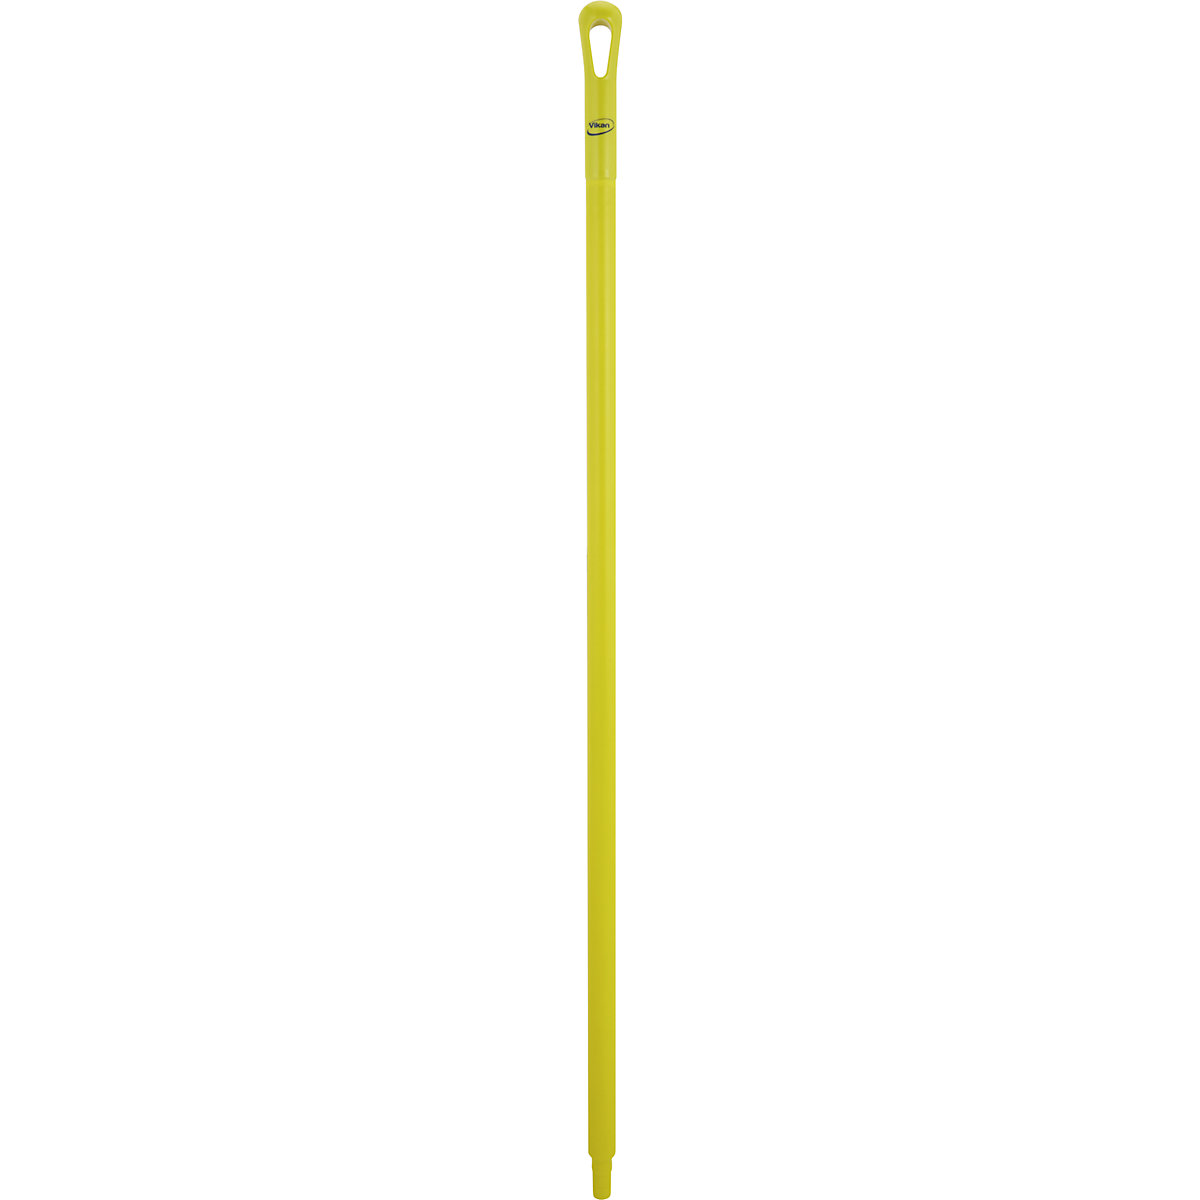 Higijenska drška – Vikan, Ø 34 mm, dužina 1300 mm, pak. 10 kom., u žutoj boji-6